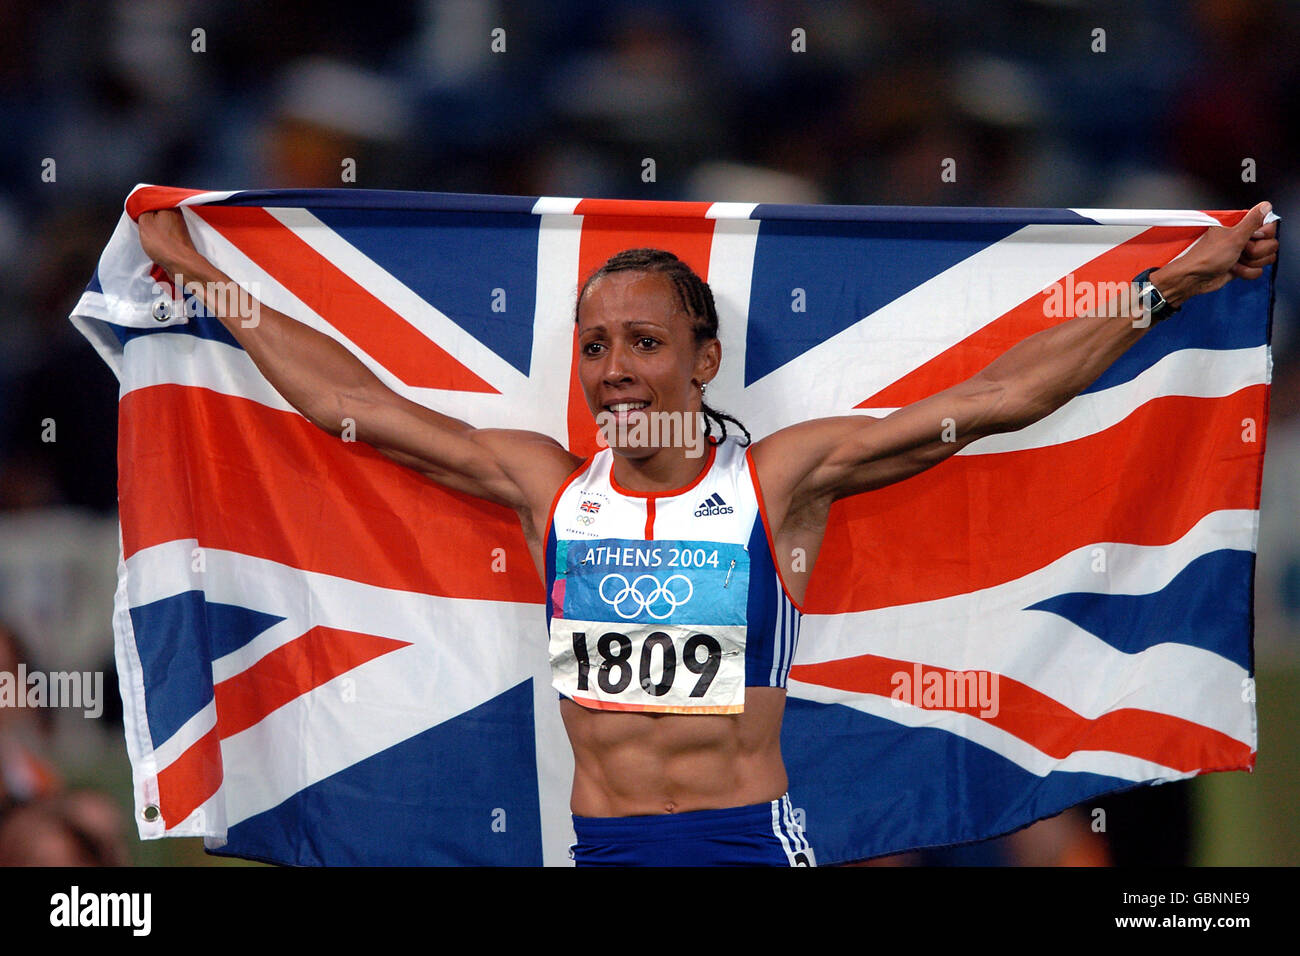 Leichtathletik - Olympische Spiele 2004 in Athen - 800 m der Frauen - Finale. Die britische Kelly Holmes winkt den Fans zu, als sie die Goldmedaille feiert Stockfoto